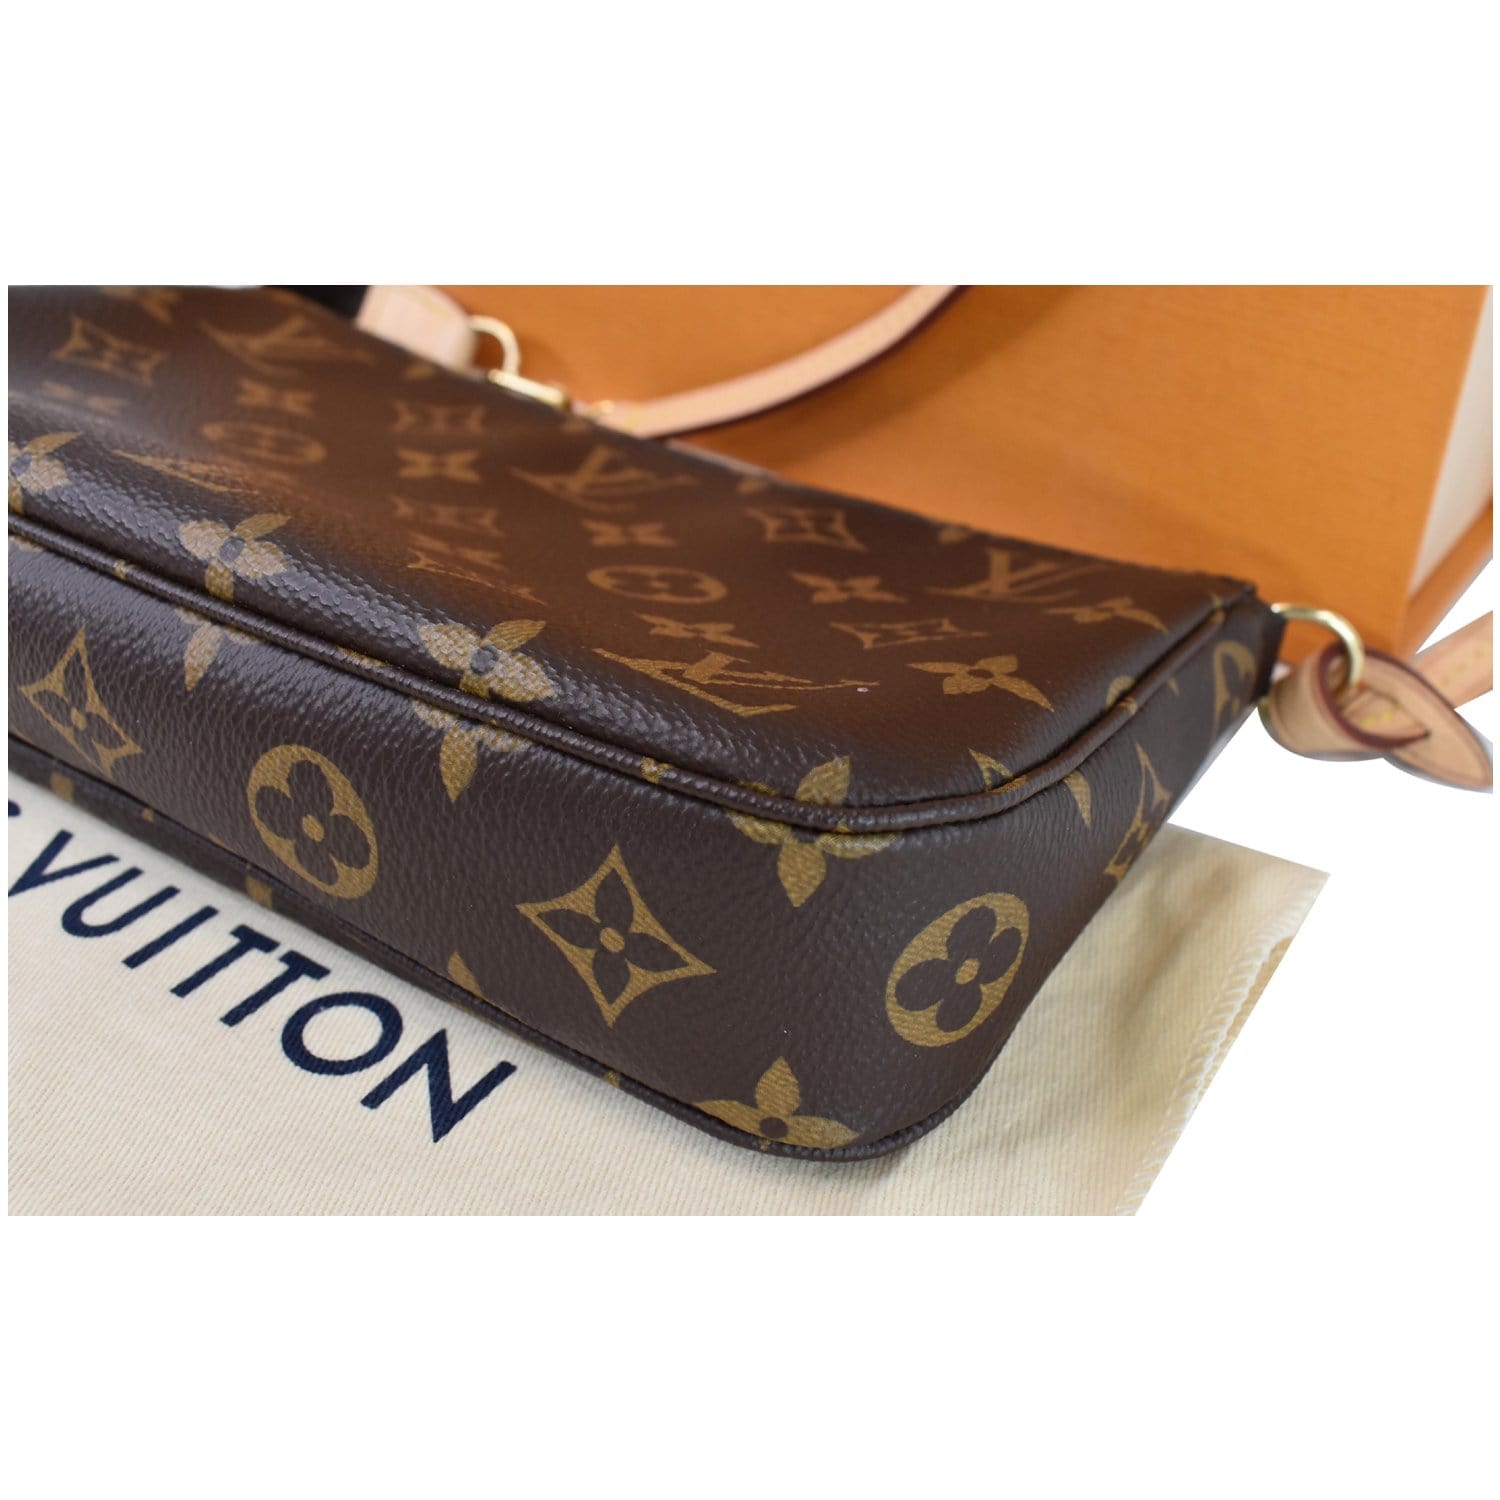 Louis Vuitton Pochette Accessories Monogram Brown